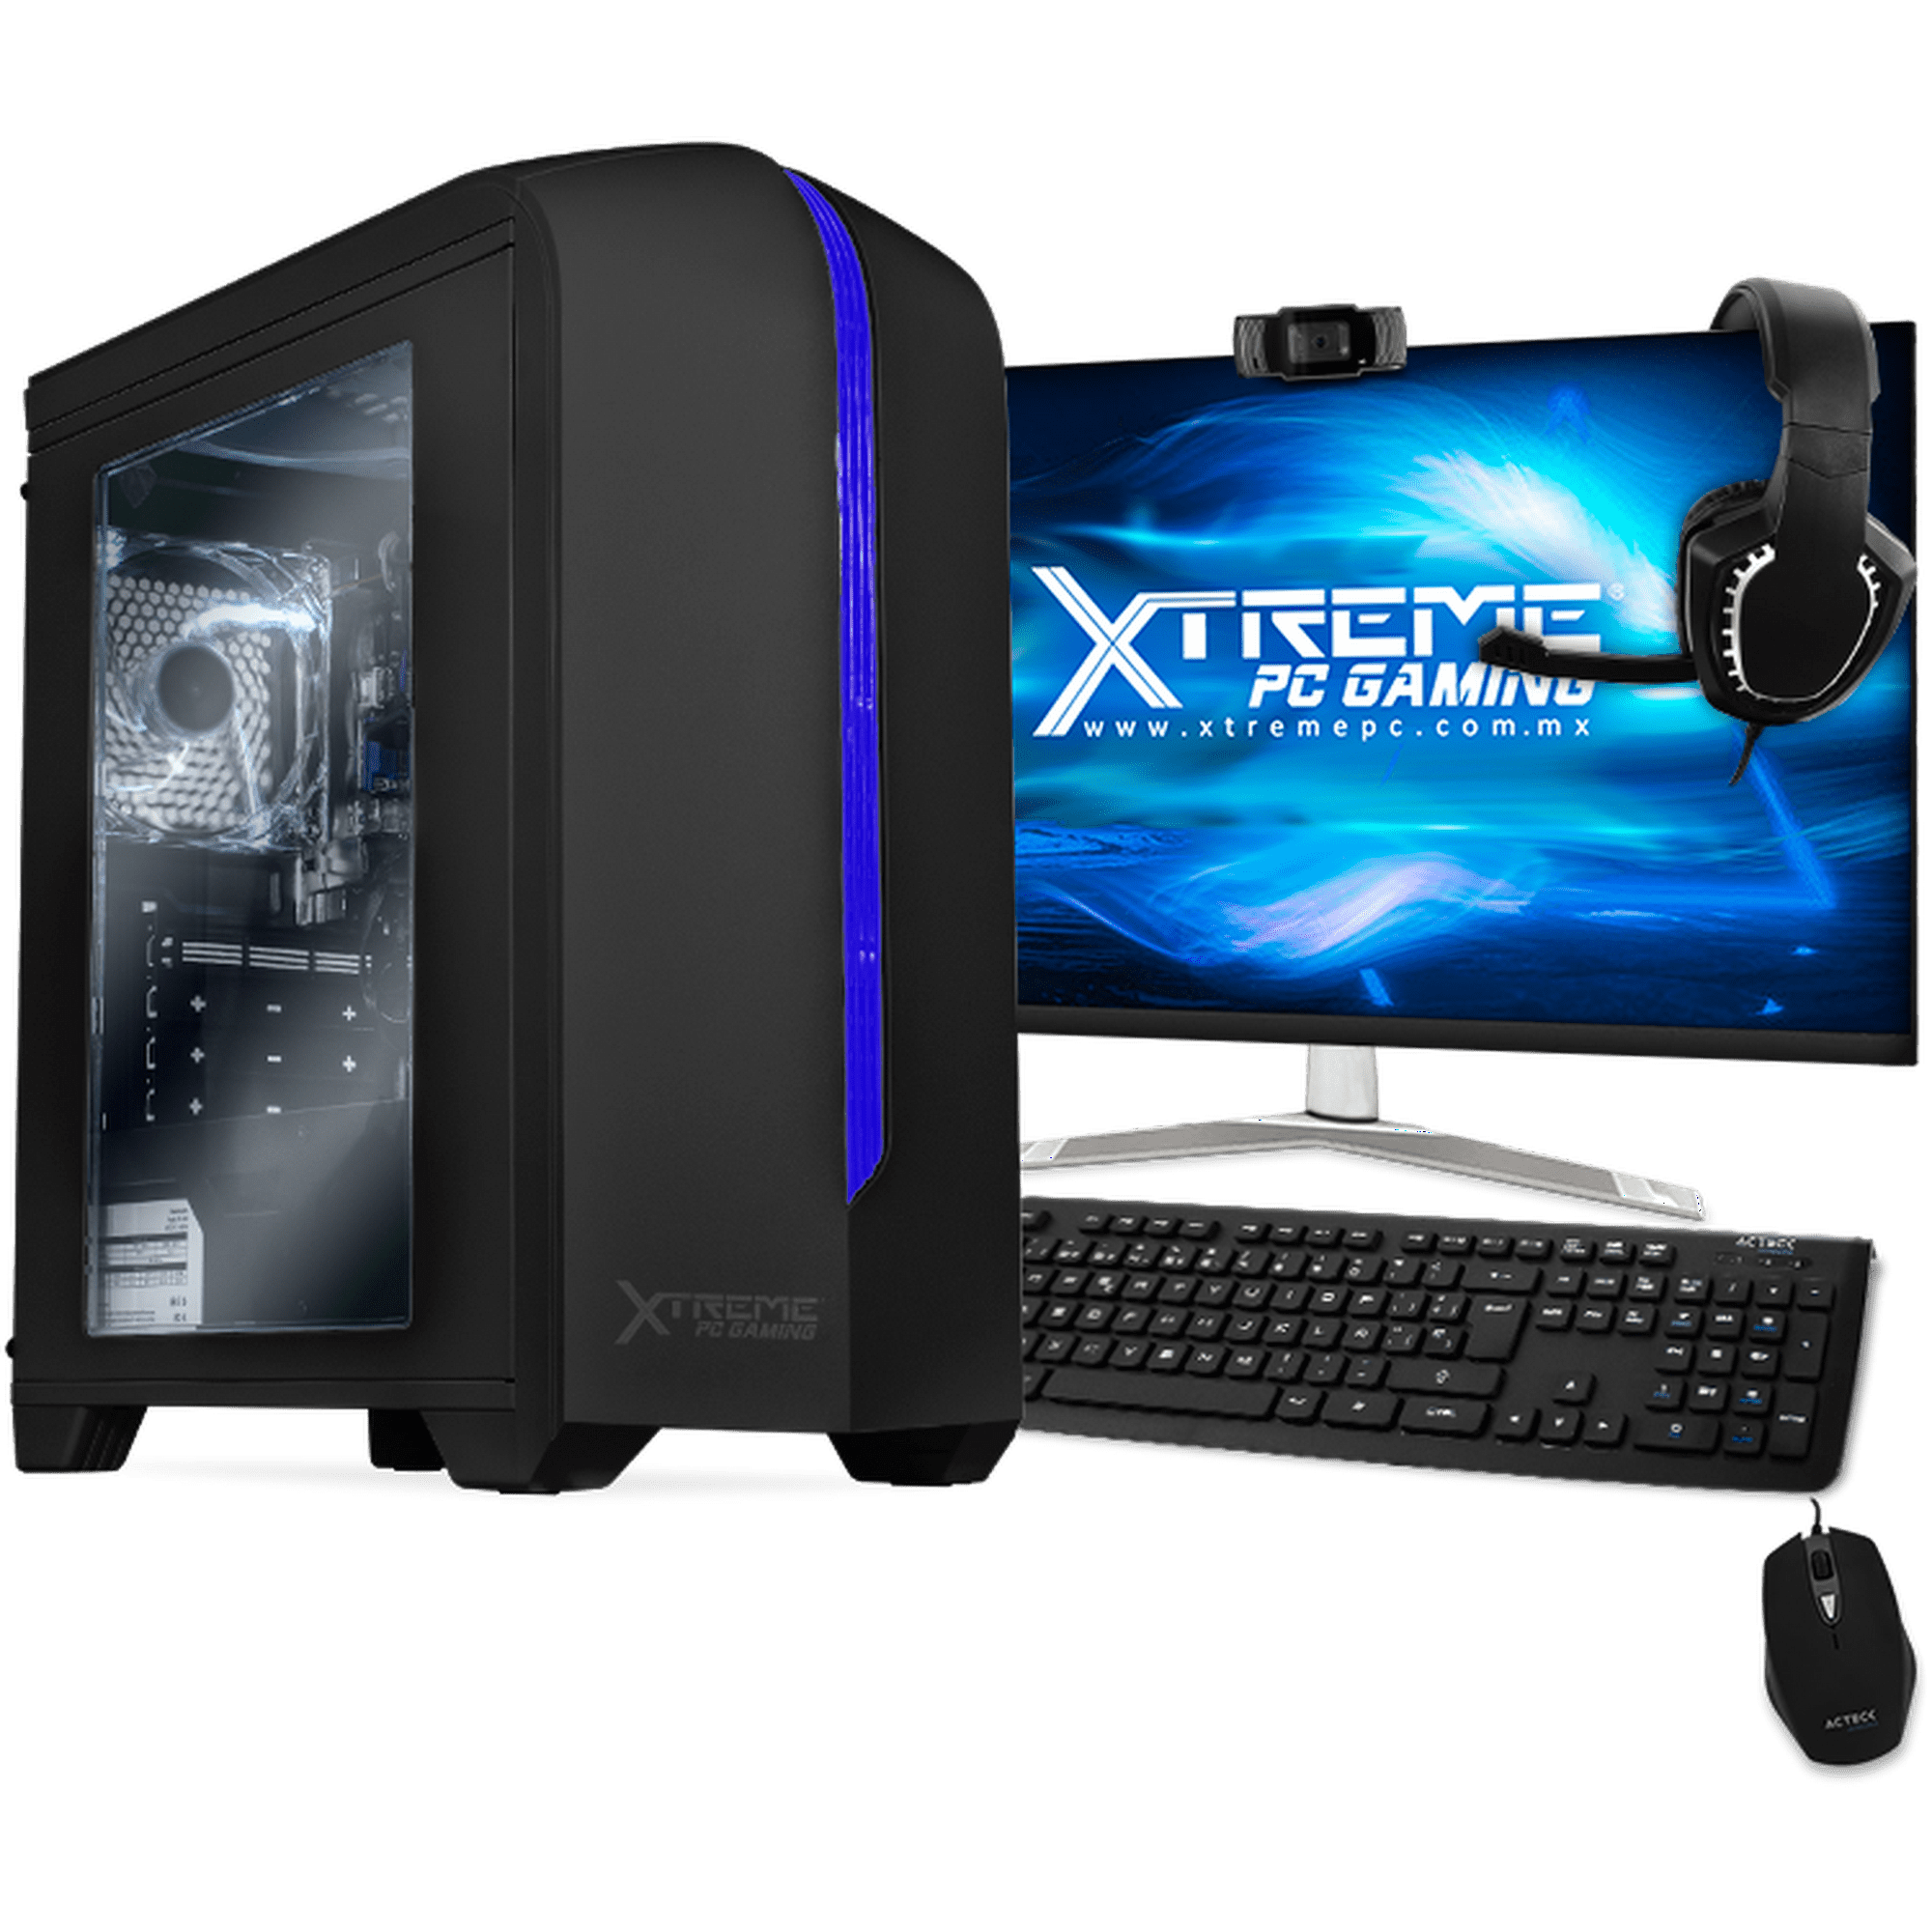 Xtreme Pc Gaming Con Procesador Intel Core I5 10400 8gb Ram Ssd Monitor De 23 8 Y Cámara Web